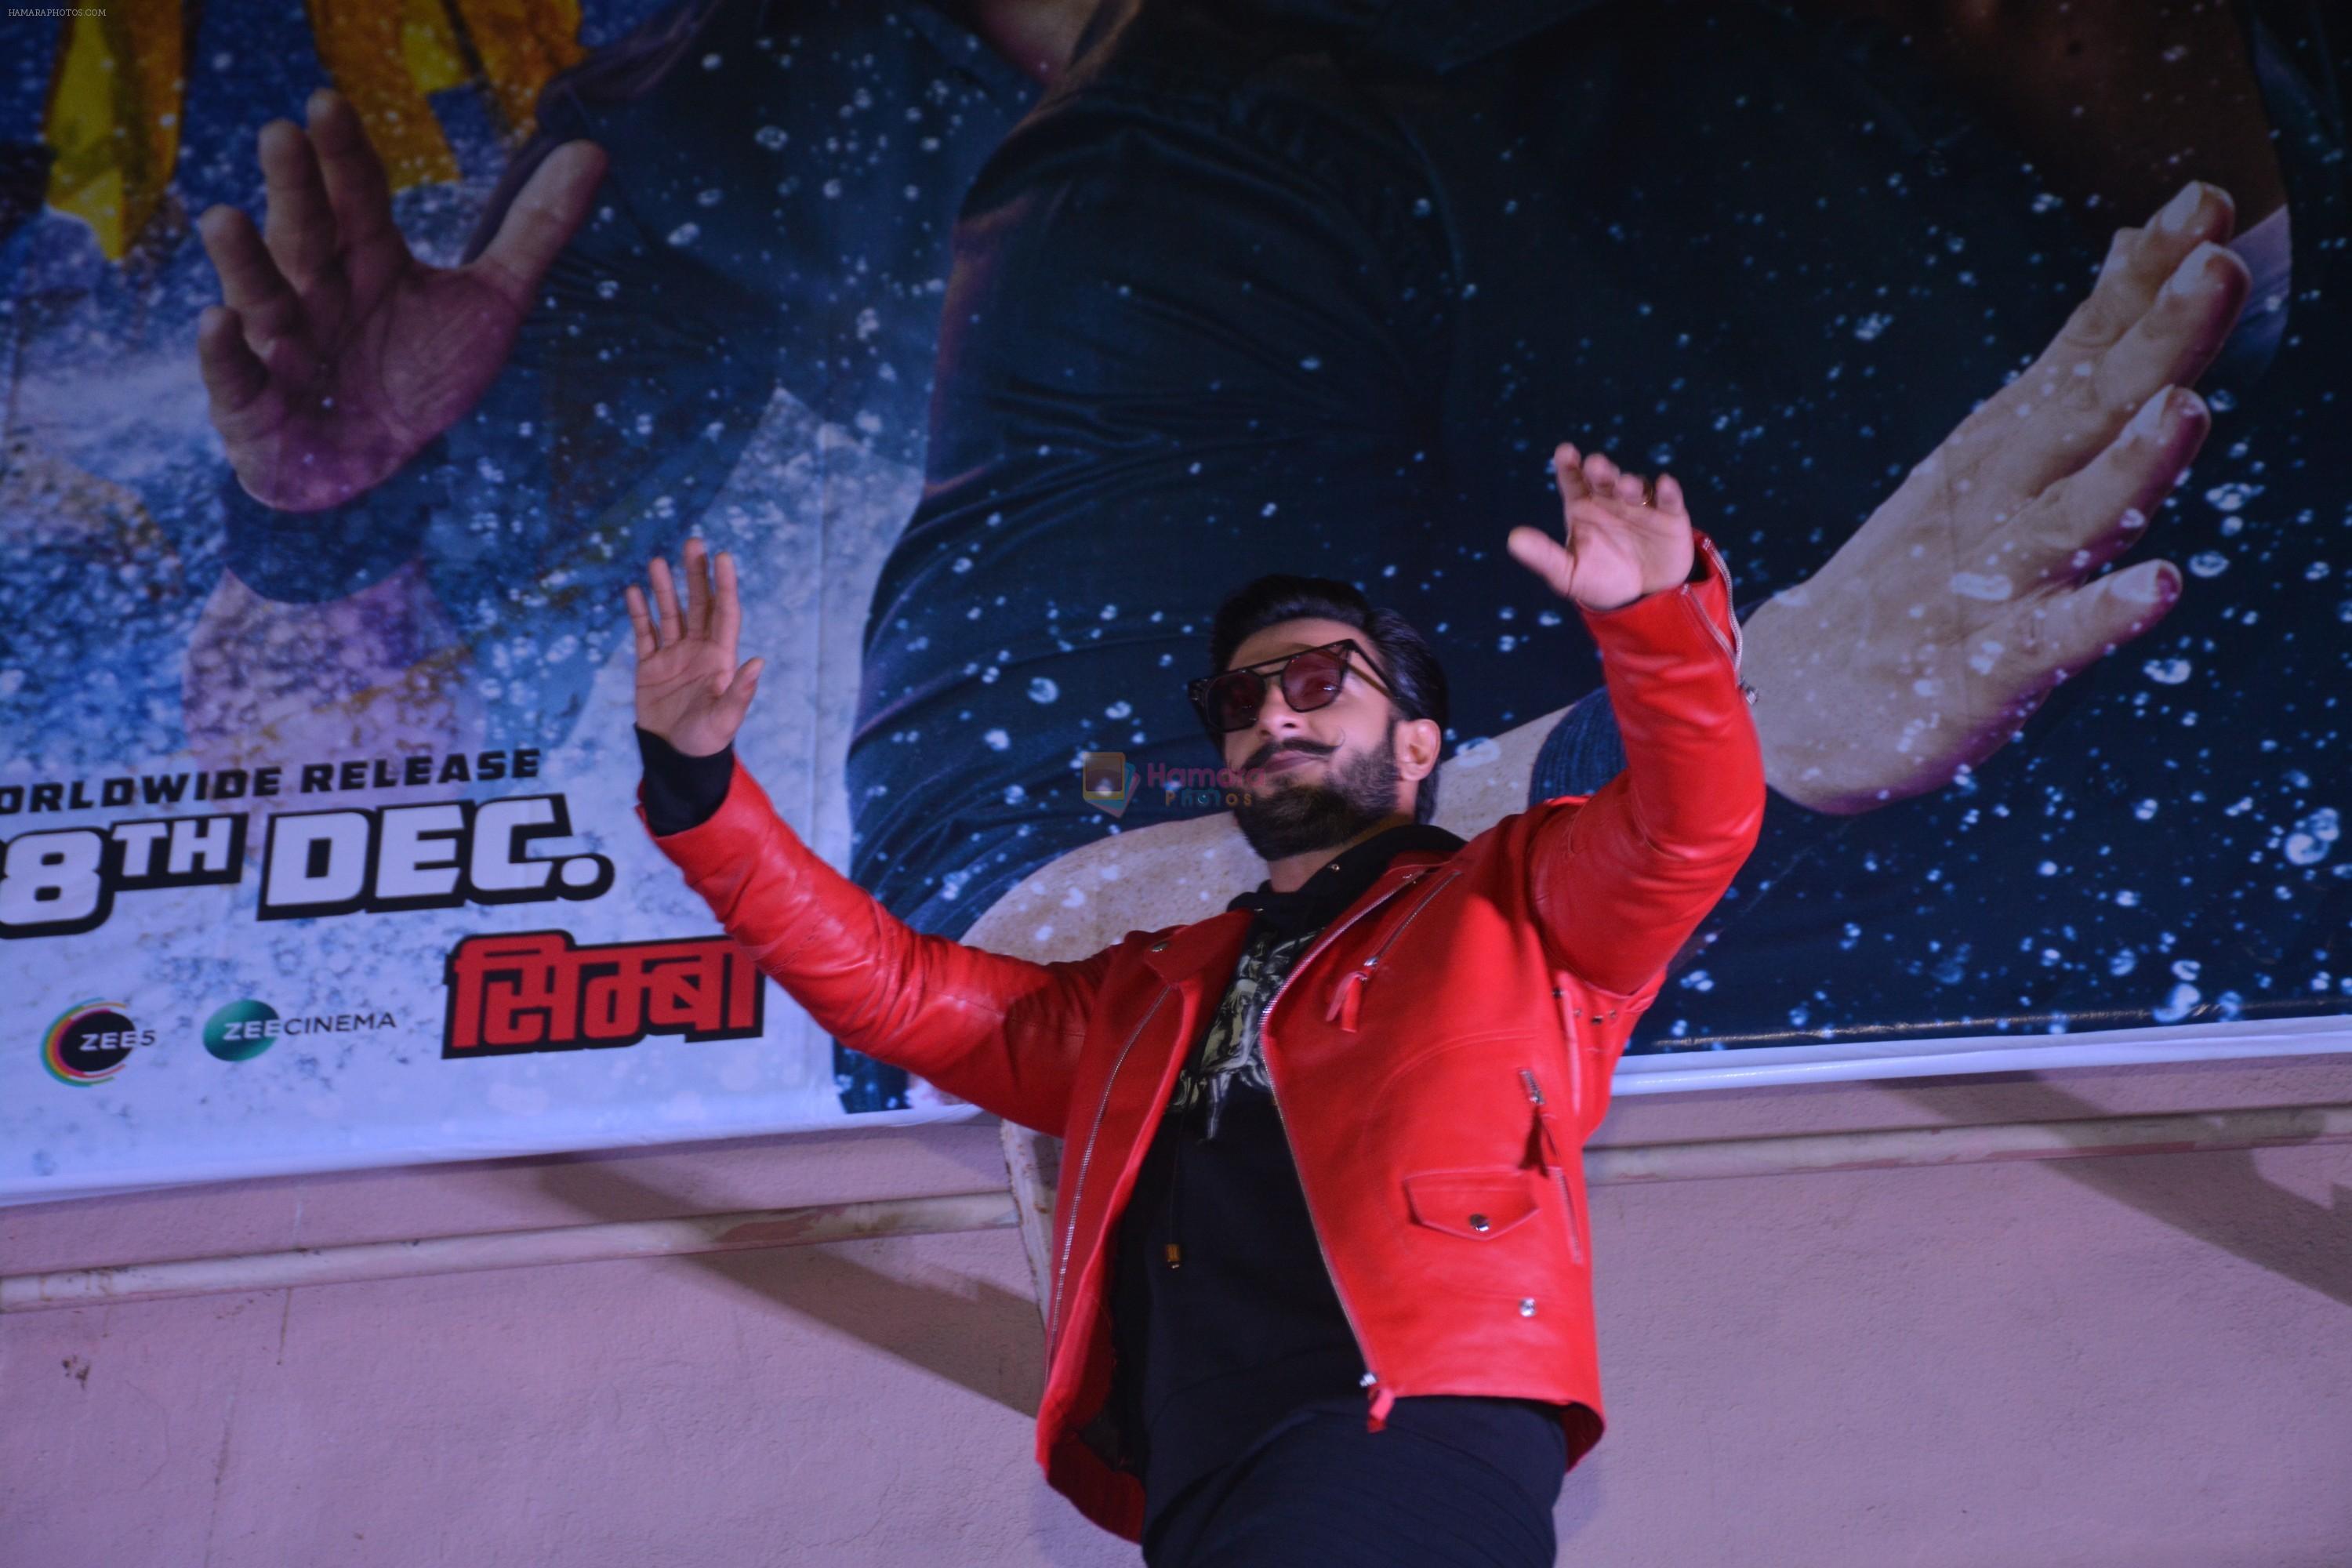 Ranveer Singh visit gaiety galaxy bandra to meet the audiences on 28th Dec 2018